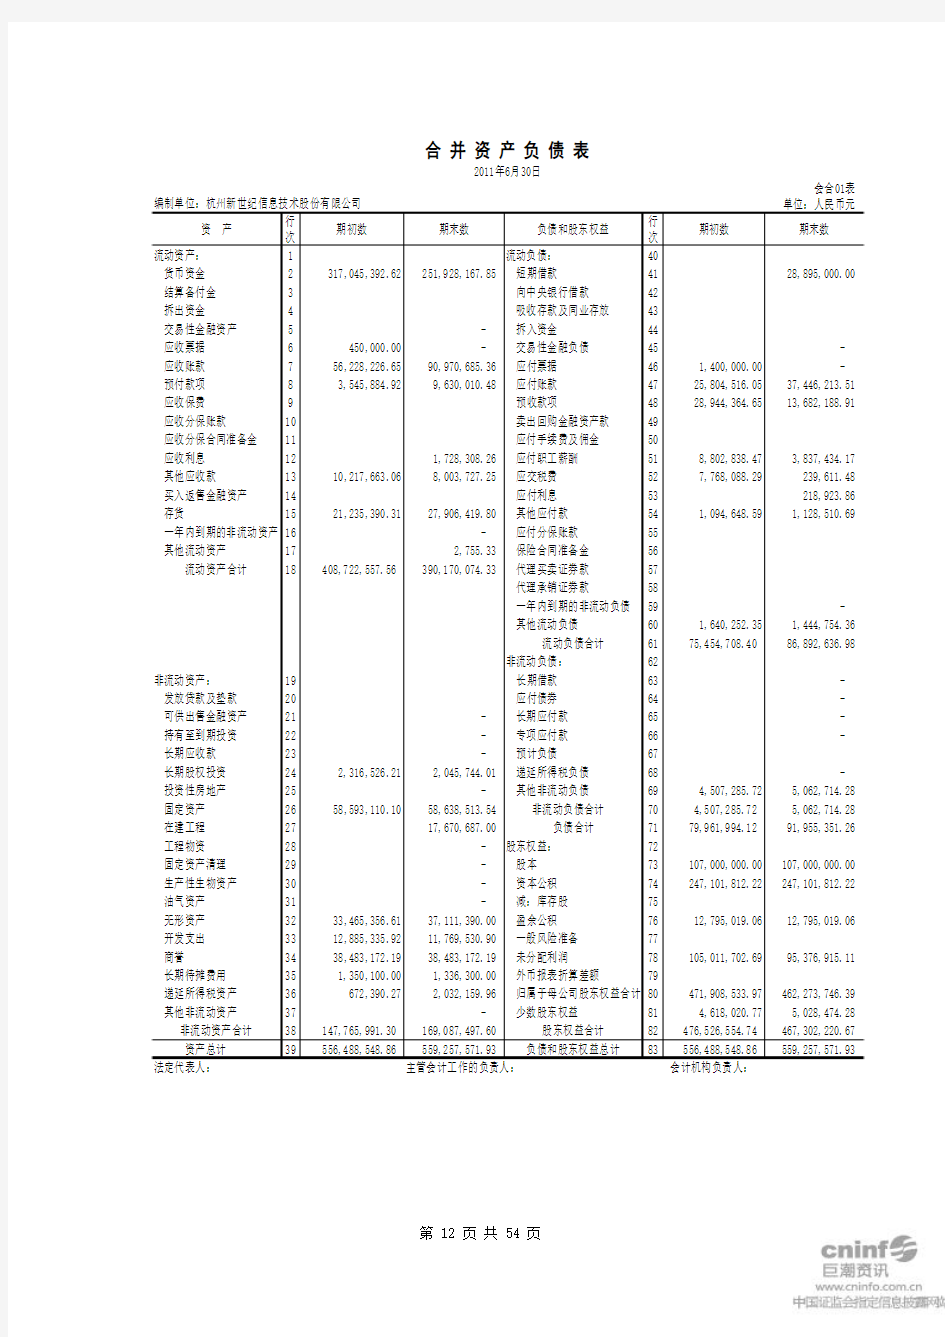 新世纪：2011年半年度财务报告
 2011-07-29